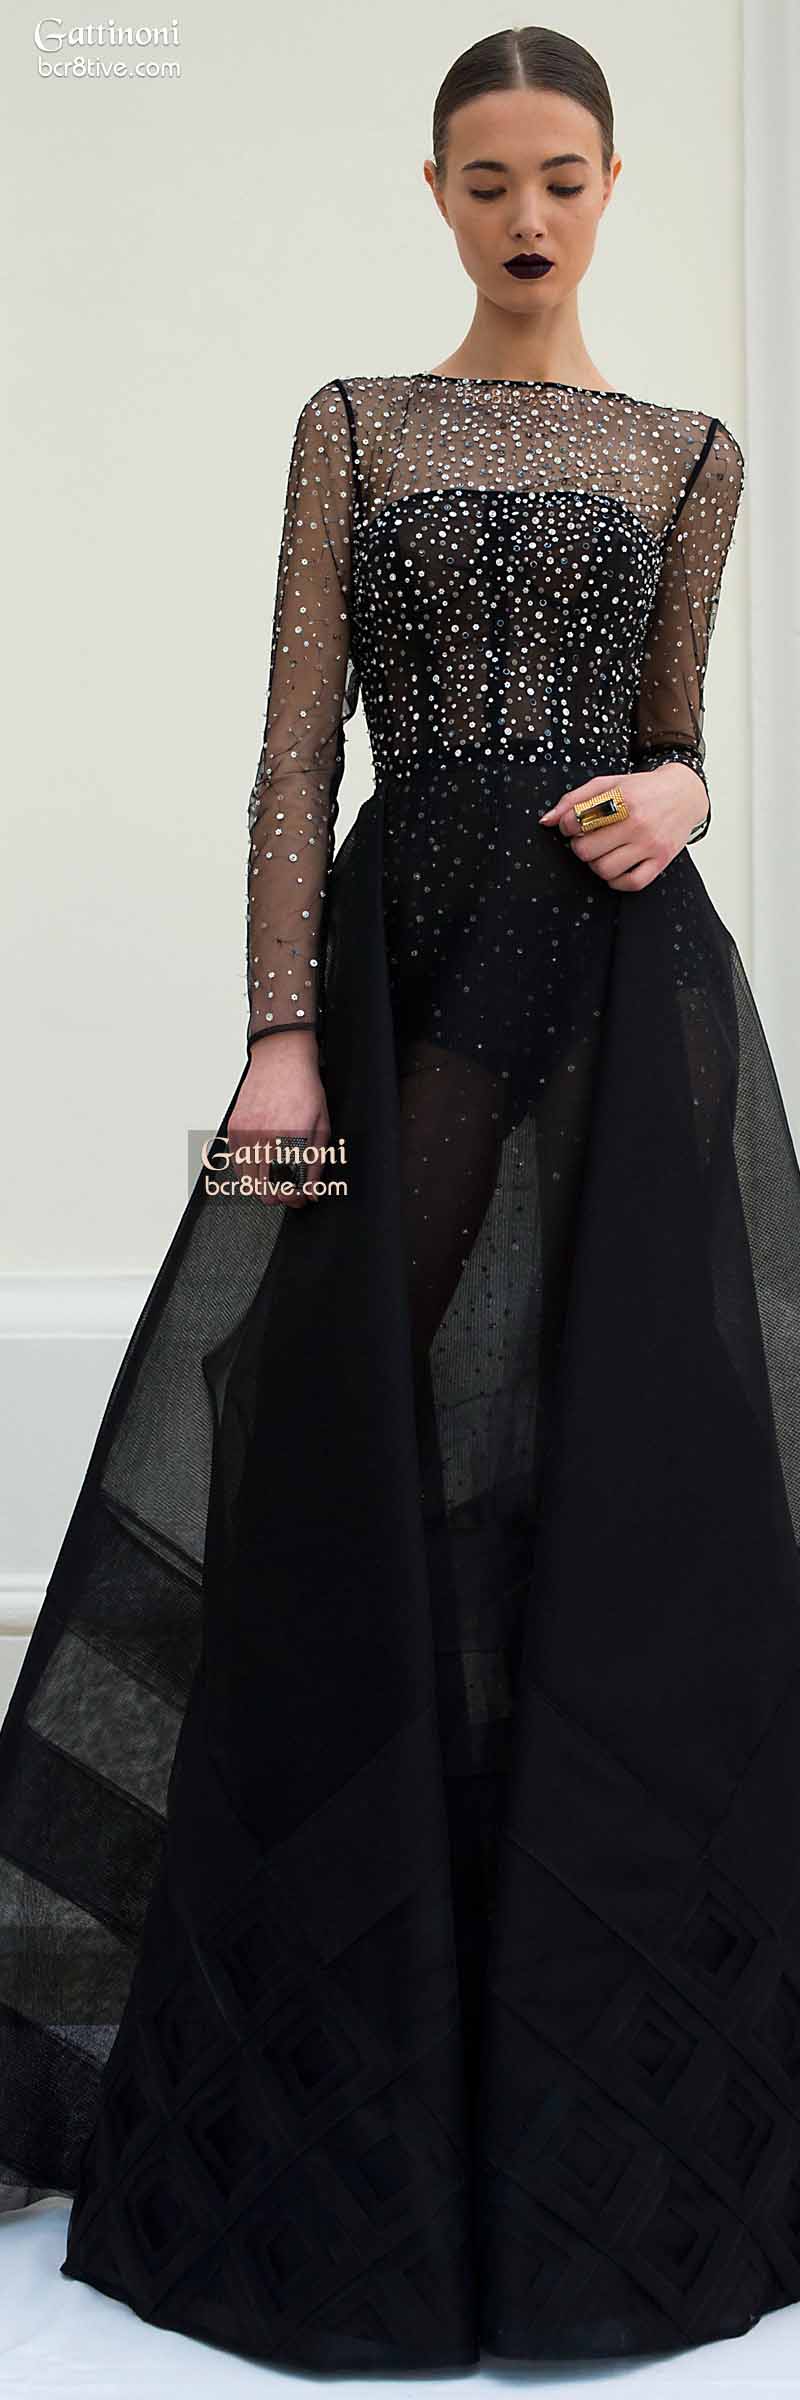 Gattinoni Spring 2015 Haute Couture